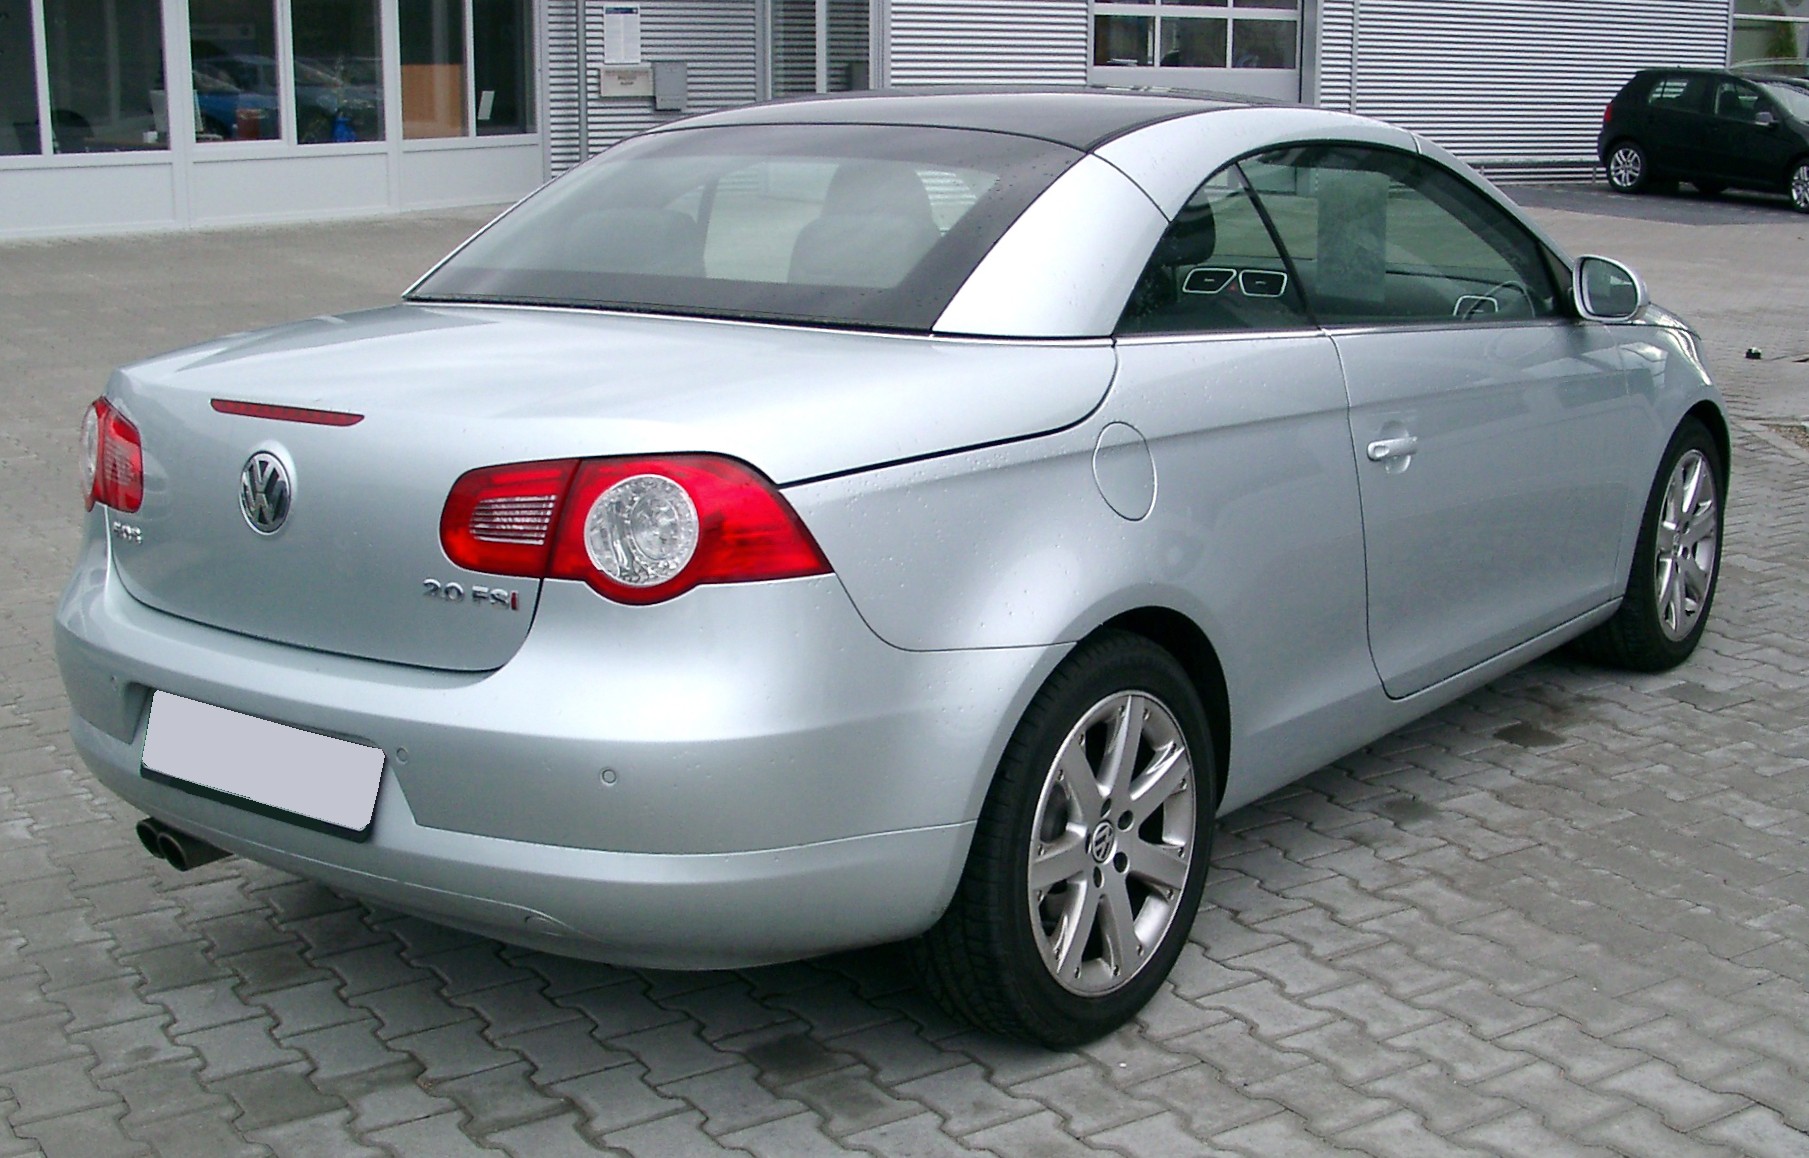 File:VW Eos rear 20071125.jpg - Wikipedia